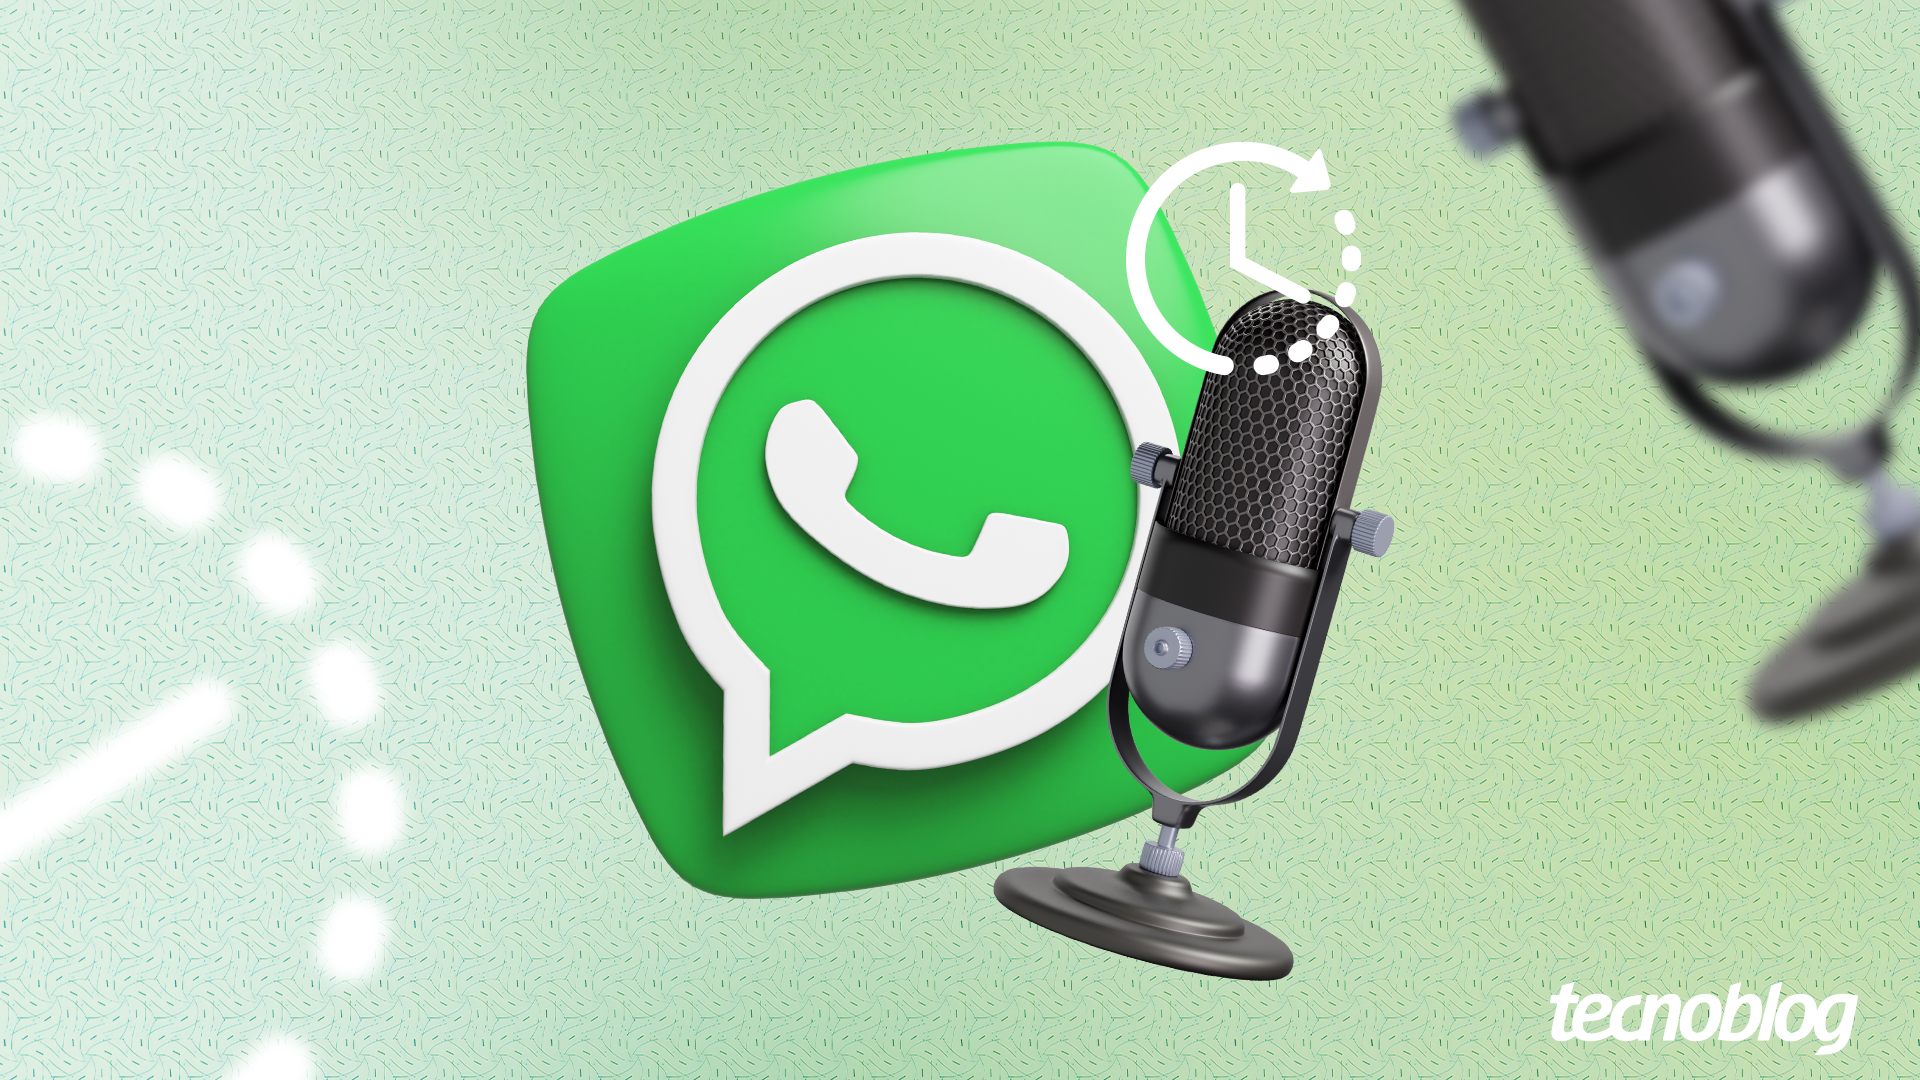 Problema no WhatsApp: usuários não conseguem enviar fotos, vídeos e áudio